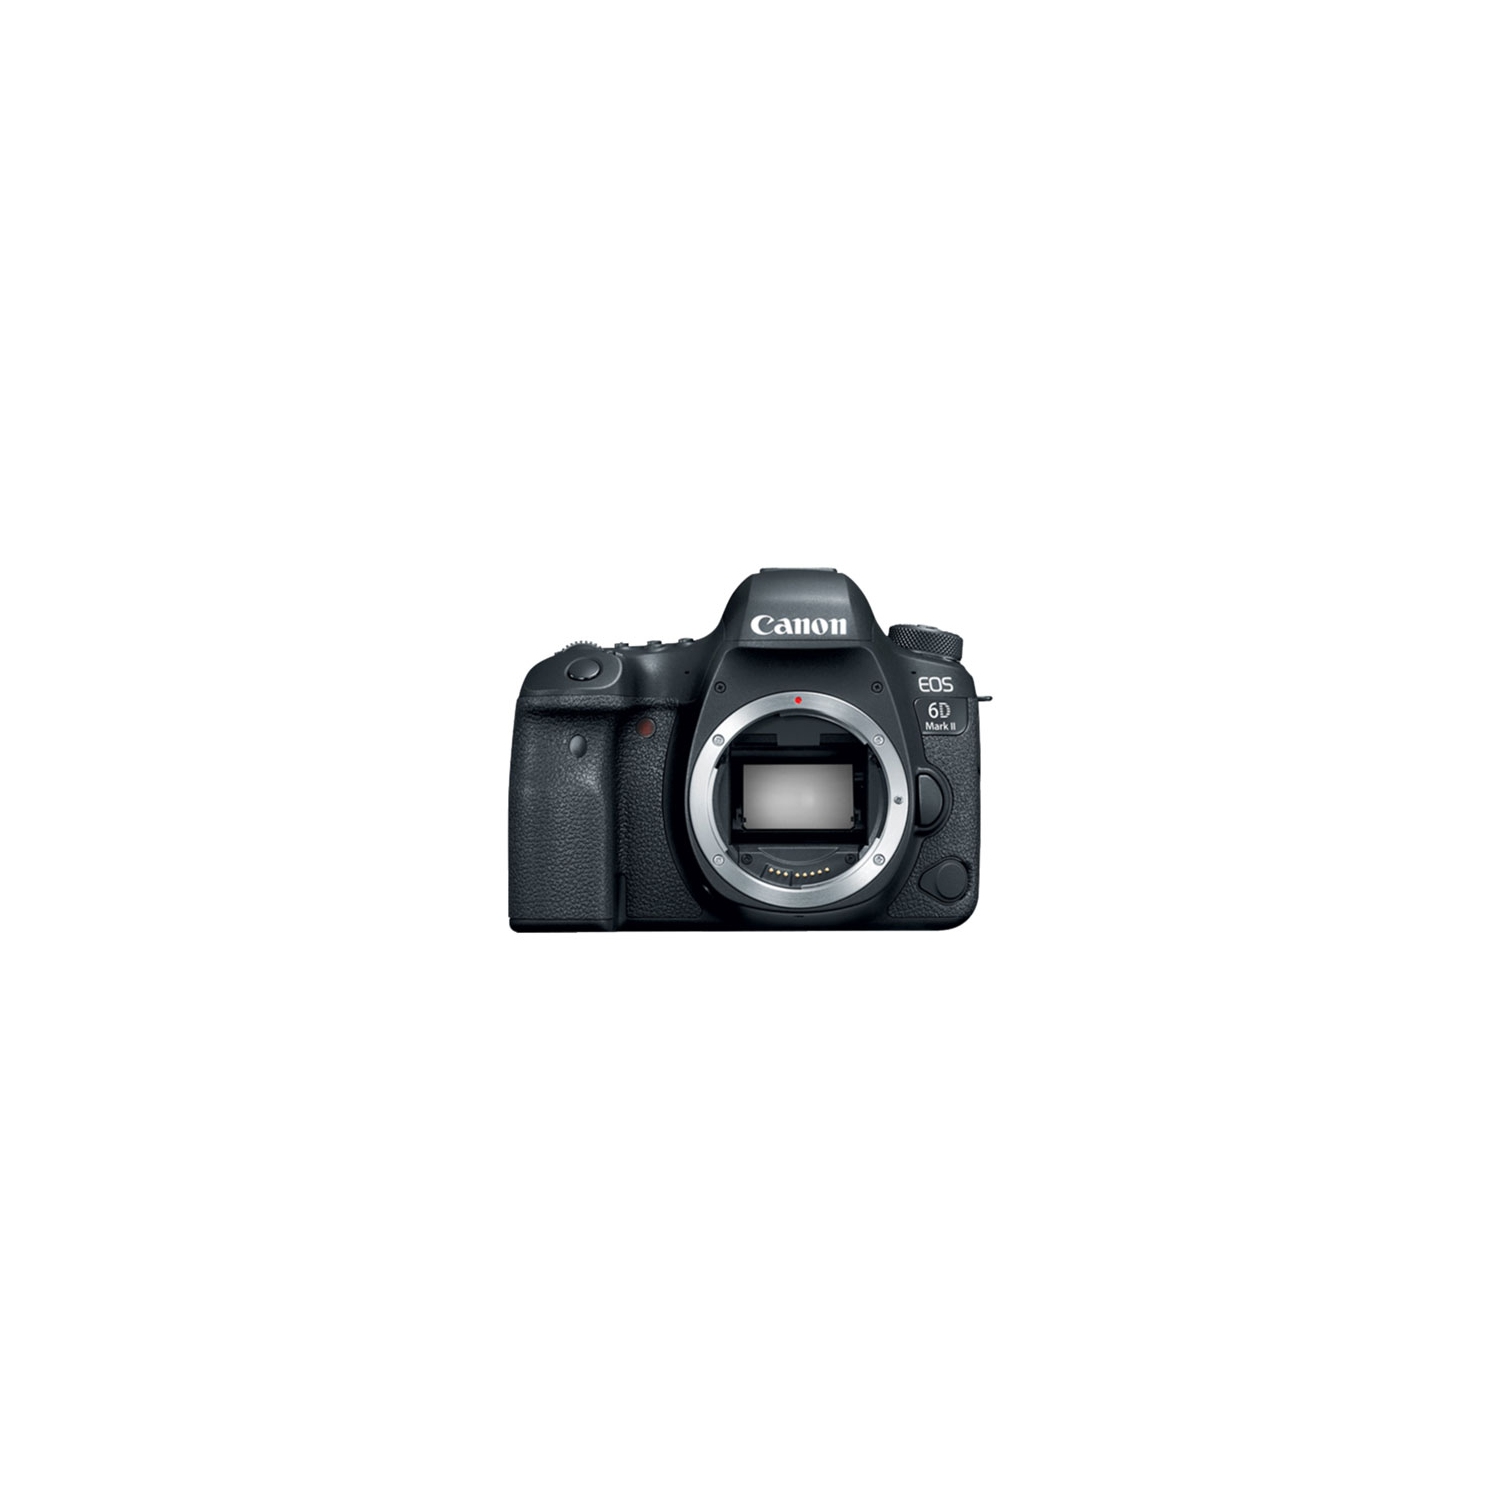 Refurbished (Good) - Canon EOS 6D Mark II DSLR Full Frame DSLR Camera (Body Only)